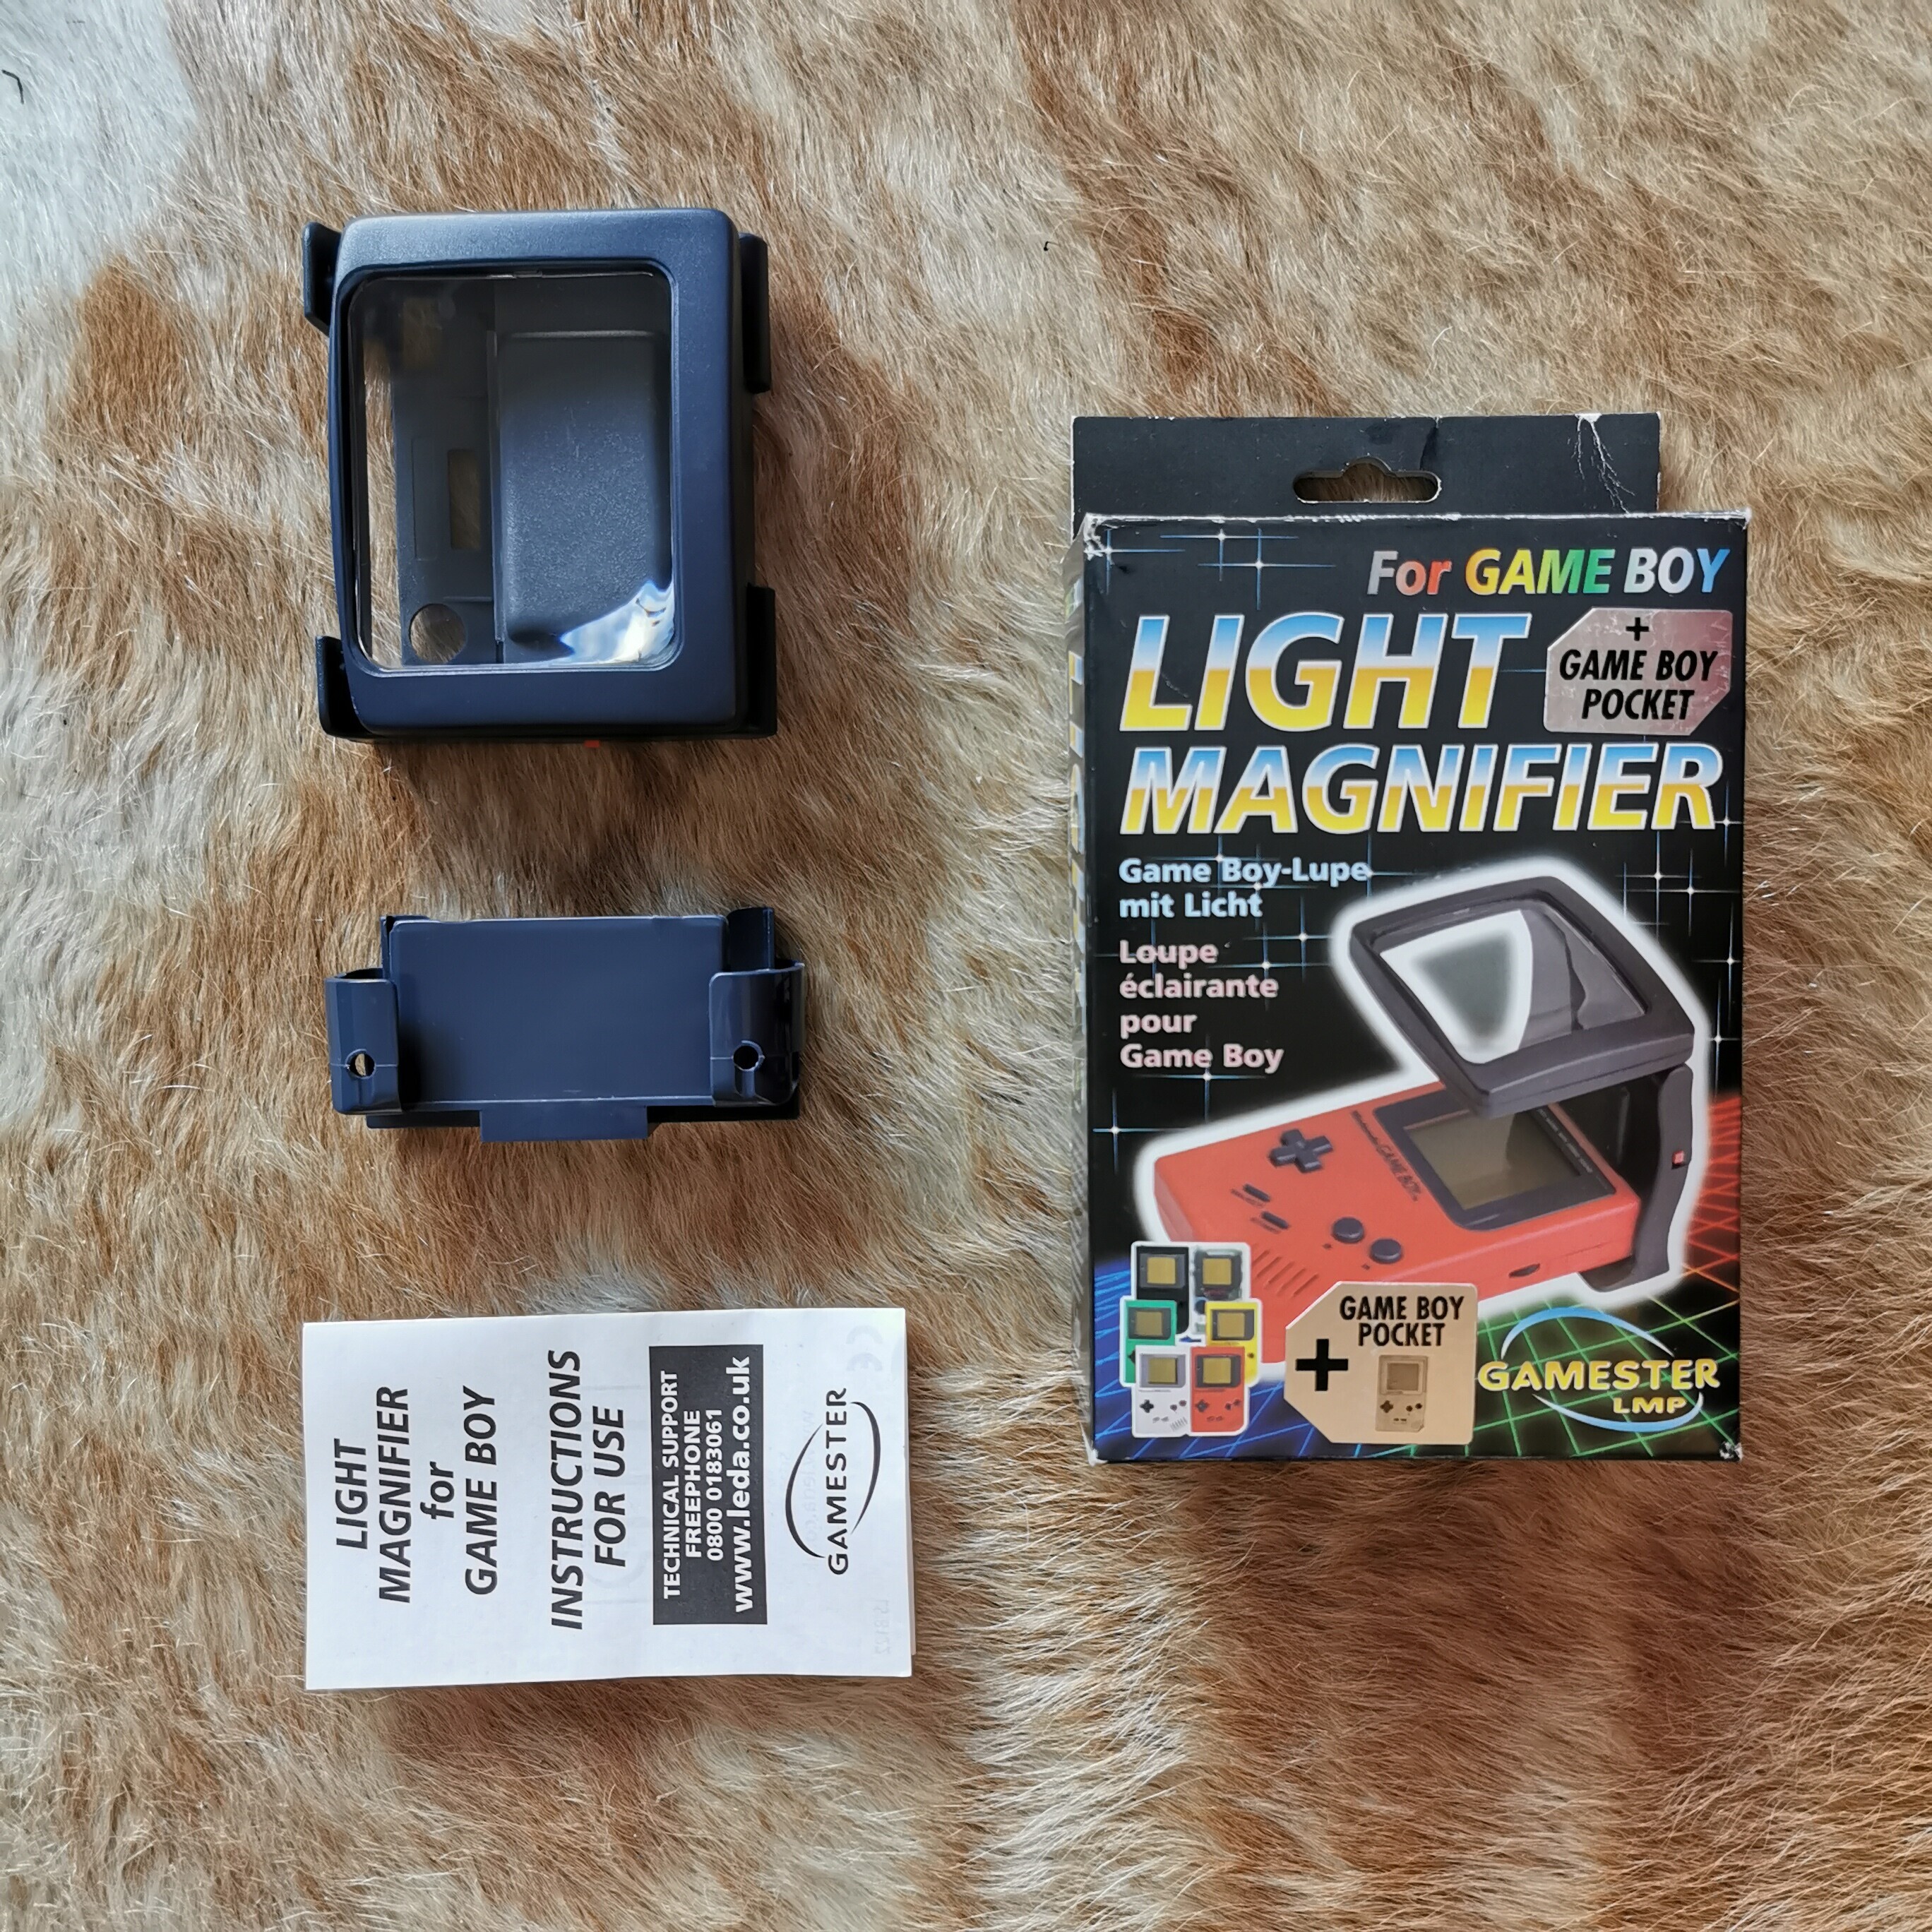  Gamester Game Boy Light Black Magnifier